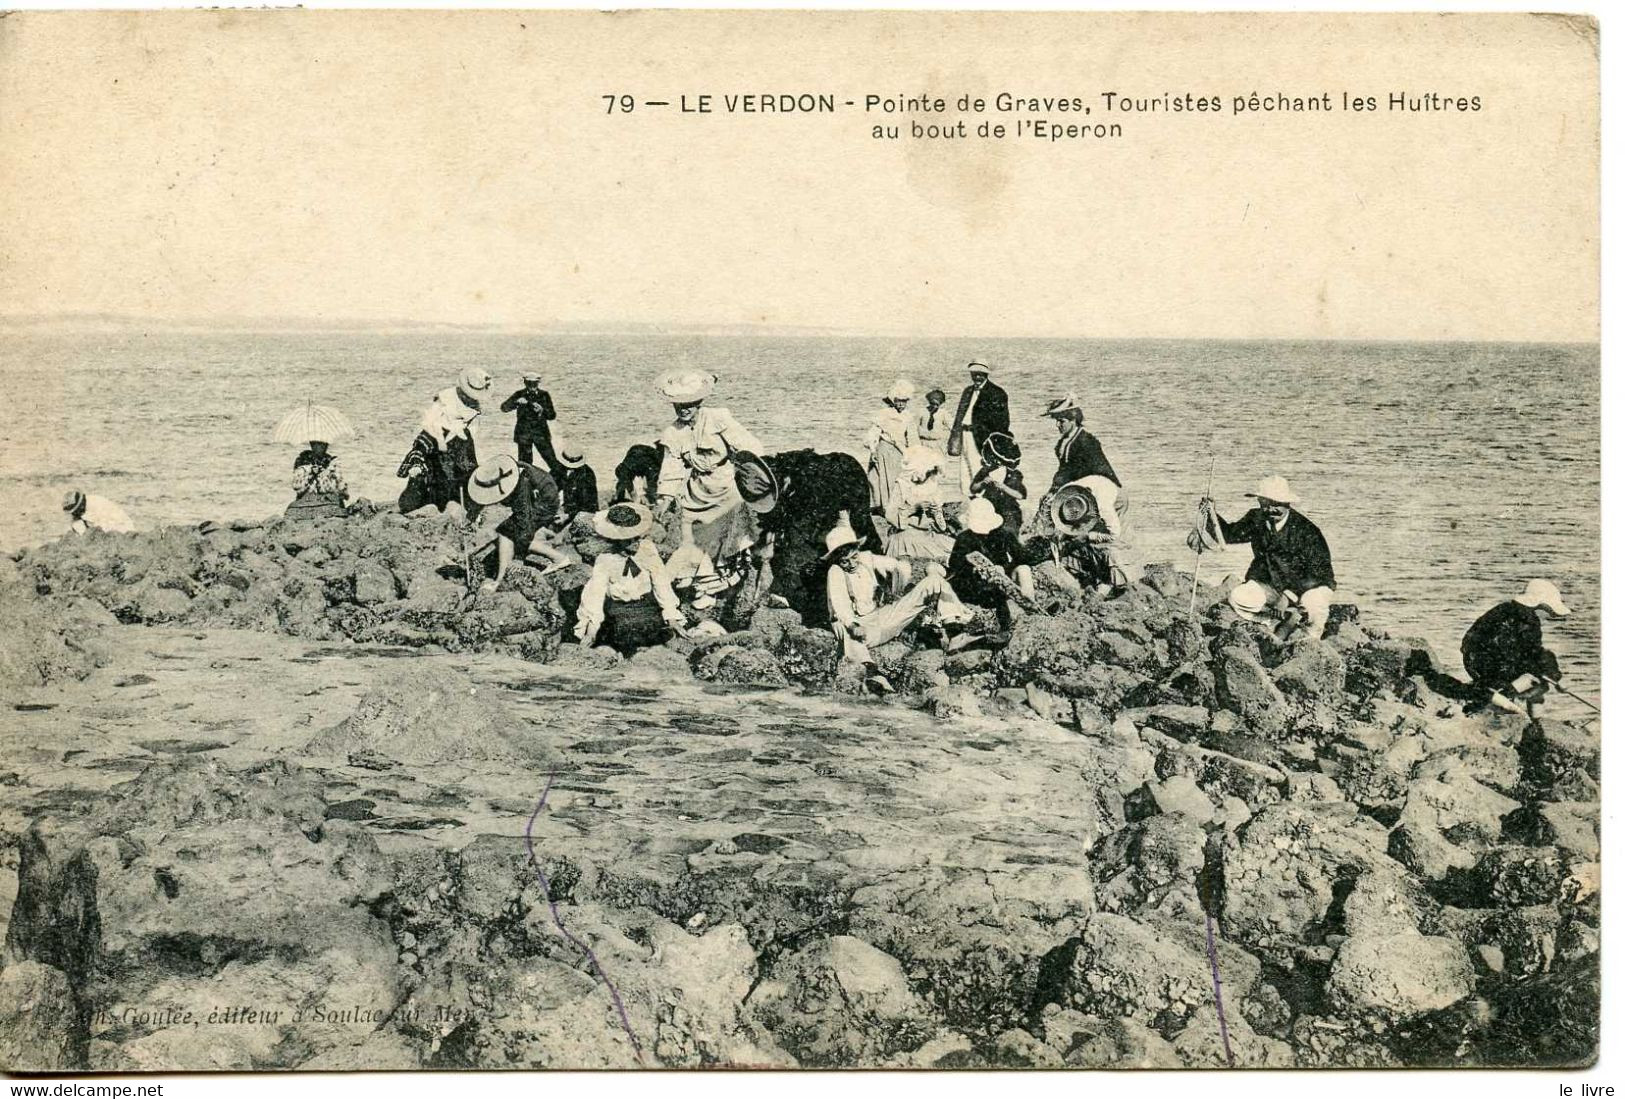 CPA 33 LE VERDON. POINTE DE GRAVES. TOURISTES PECHANT DES HUITRES EN HAUT DE L'EPERON 1906